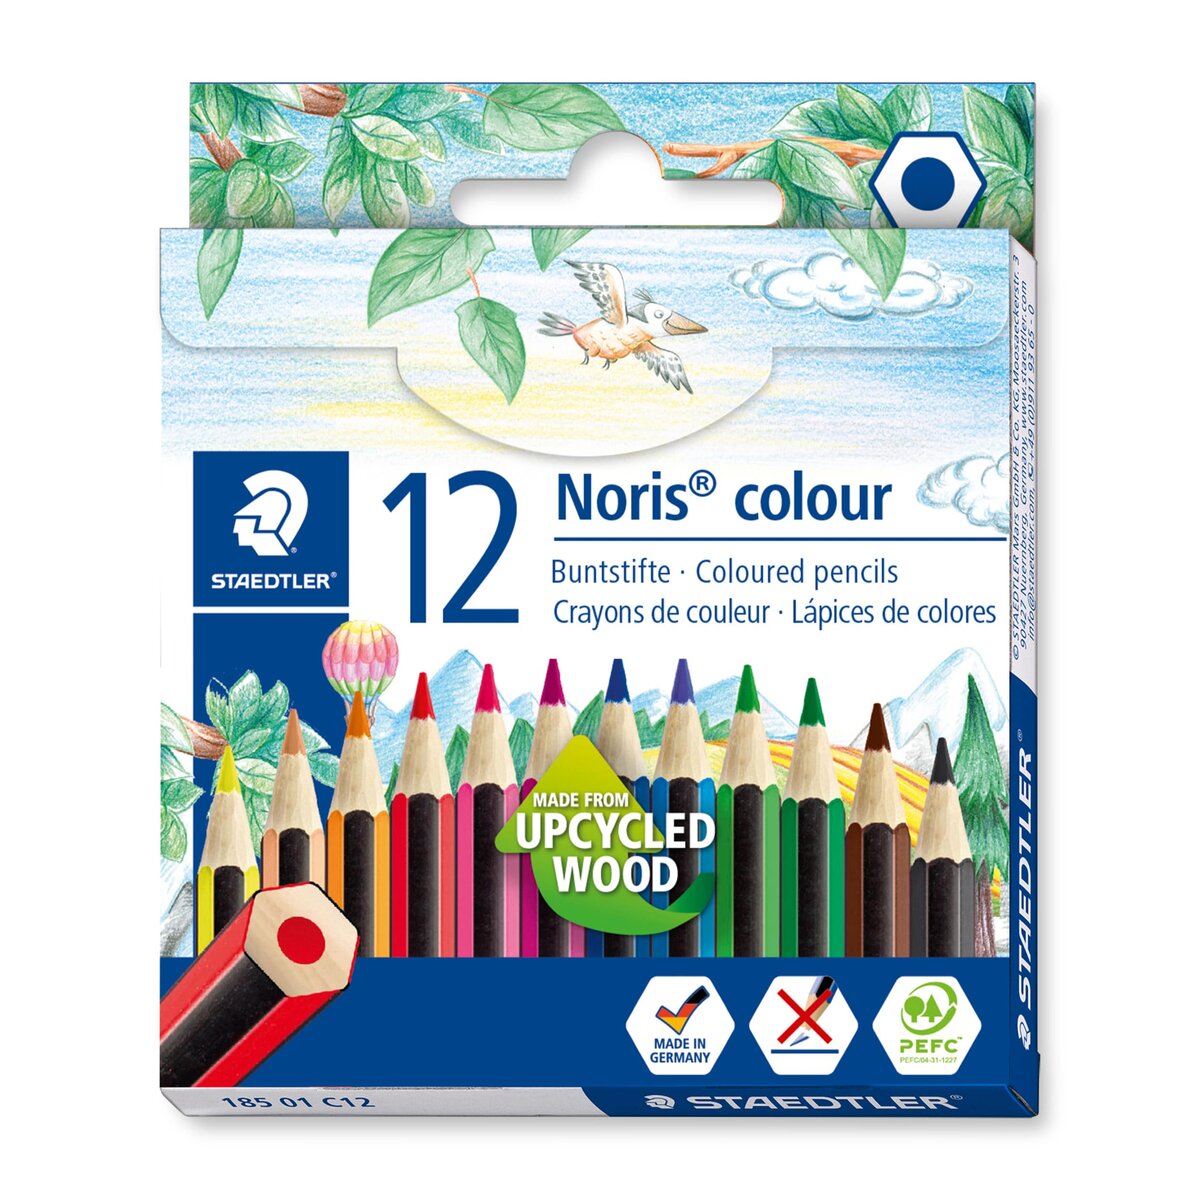 STAEDTLER® Noris® colour Buntstifte 185, 12 Packung 100% PEFC